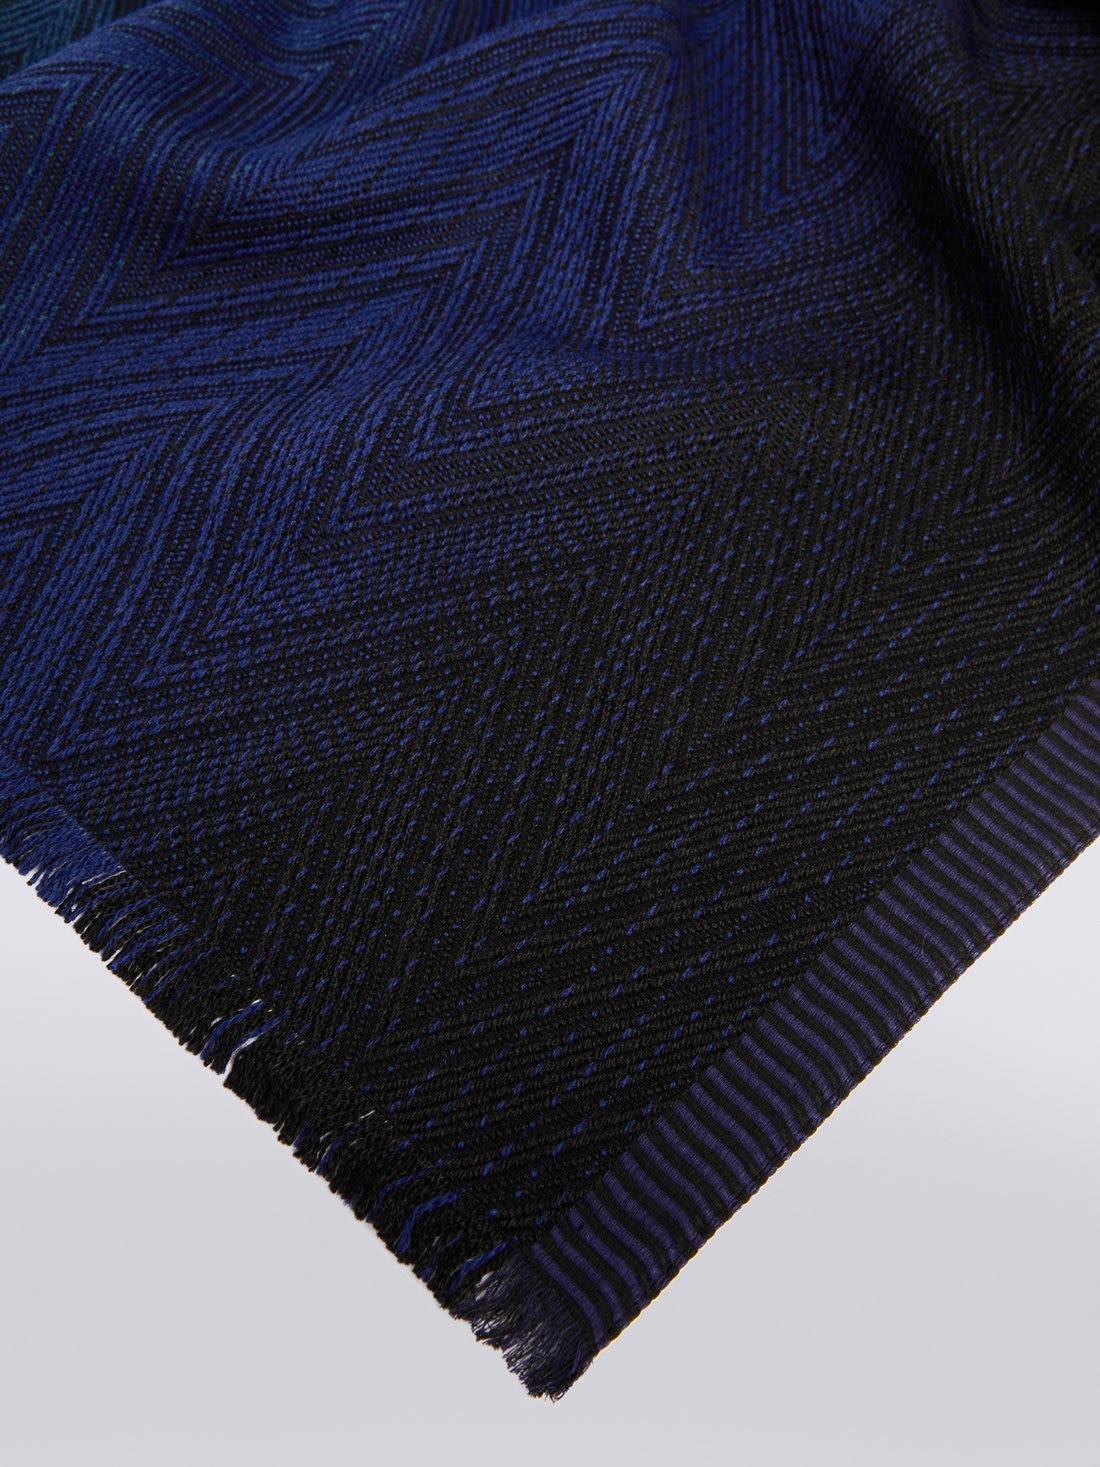 Étole en maille de viscose et laine à chevrons avec bords frangés, Multicolore  - 8053147023298 - 1